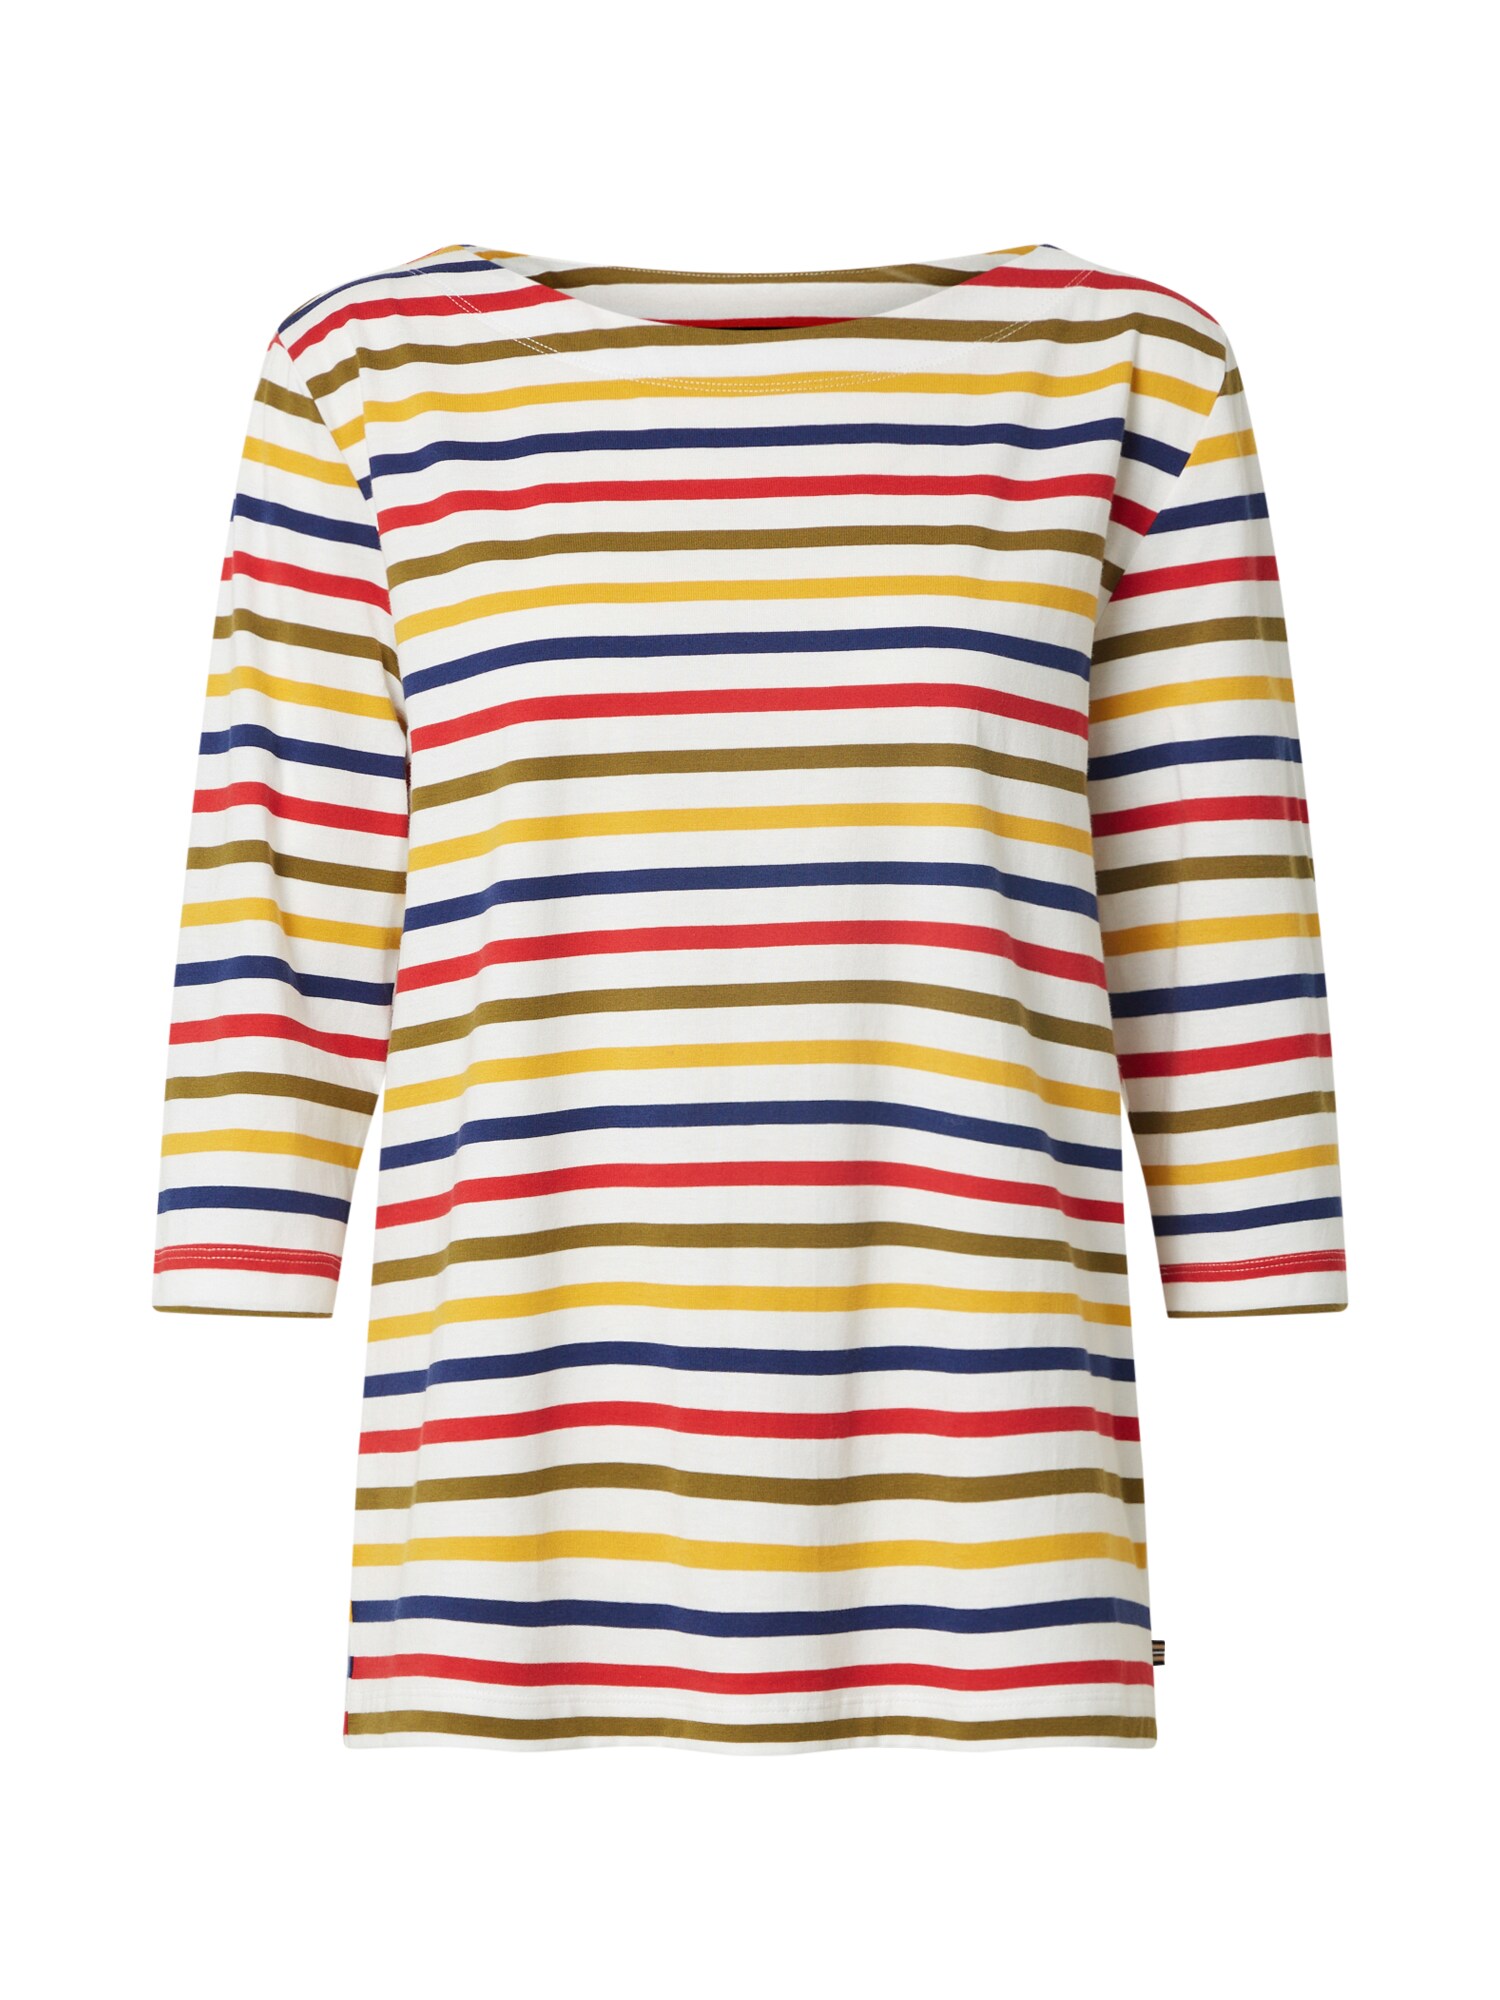 ESPRIT Marškinėliai 'OCS'  balkšva / rusvai žalia / geltona / tamsiai mėlyna / raudona